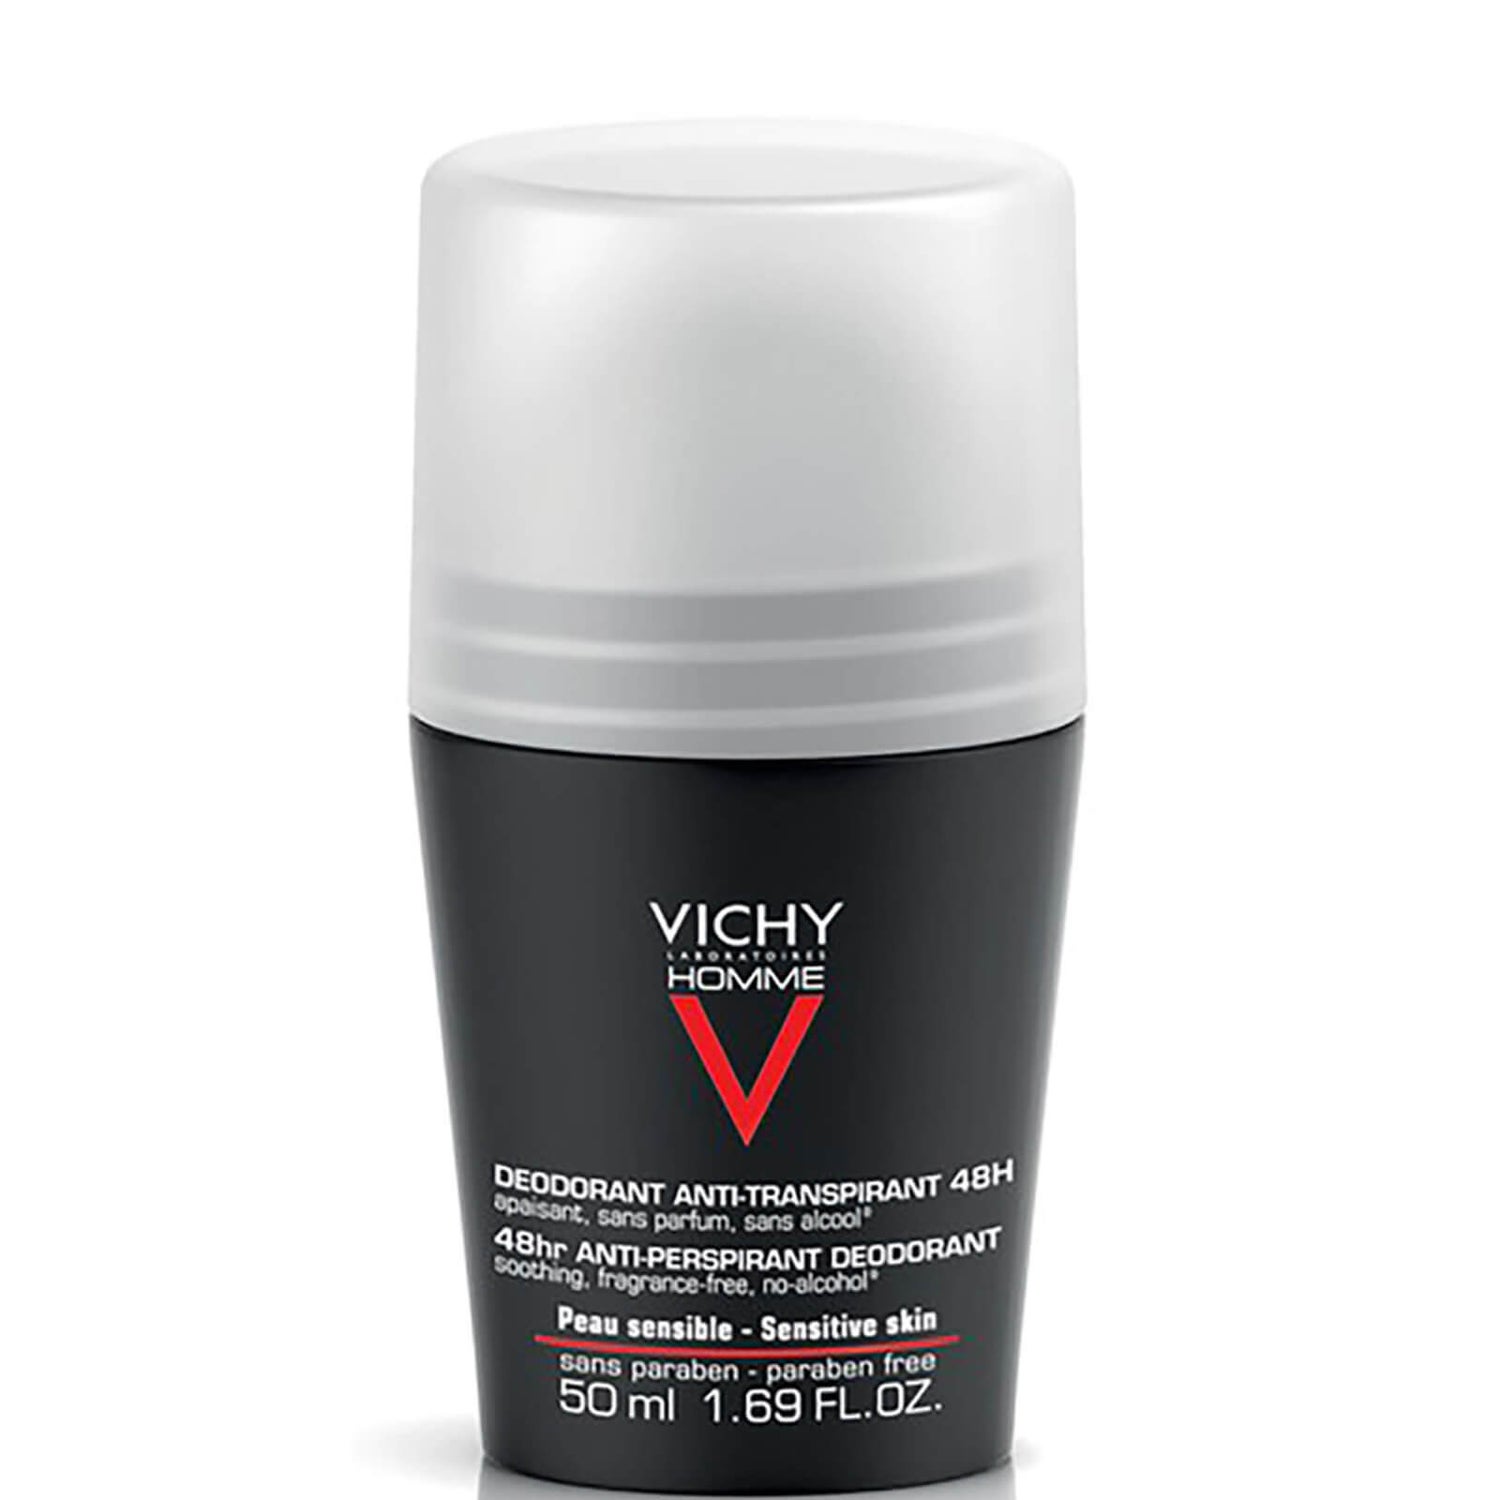 Vichy Homme deodorante roll-on uomo per pelli sensibili 50 ml